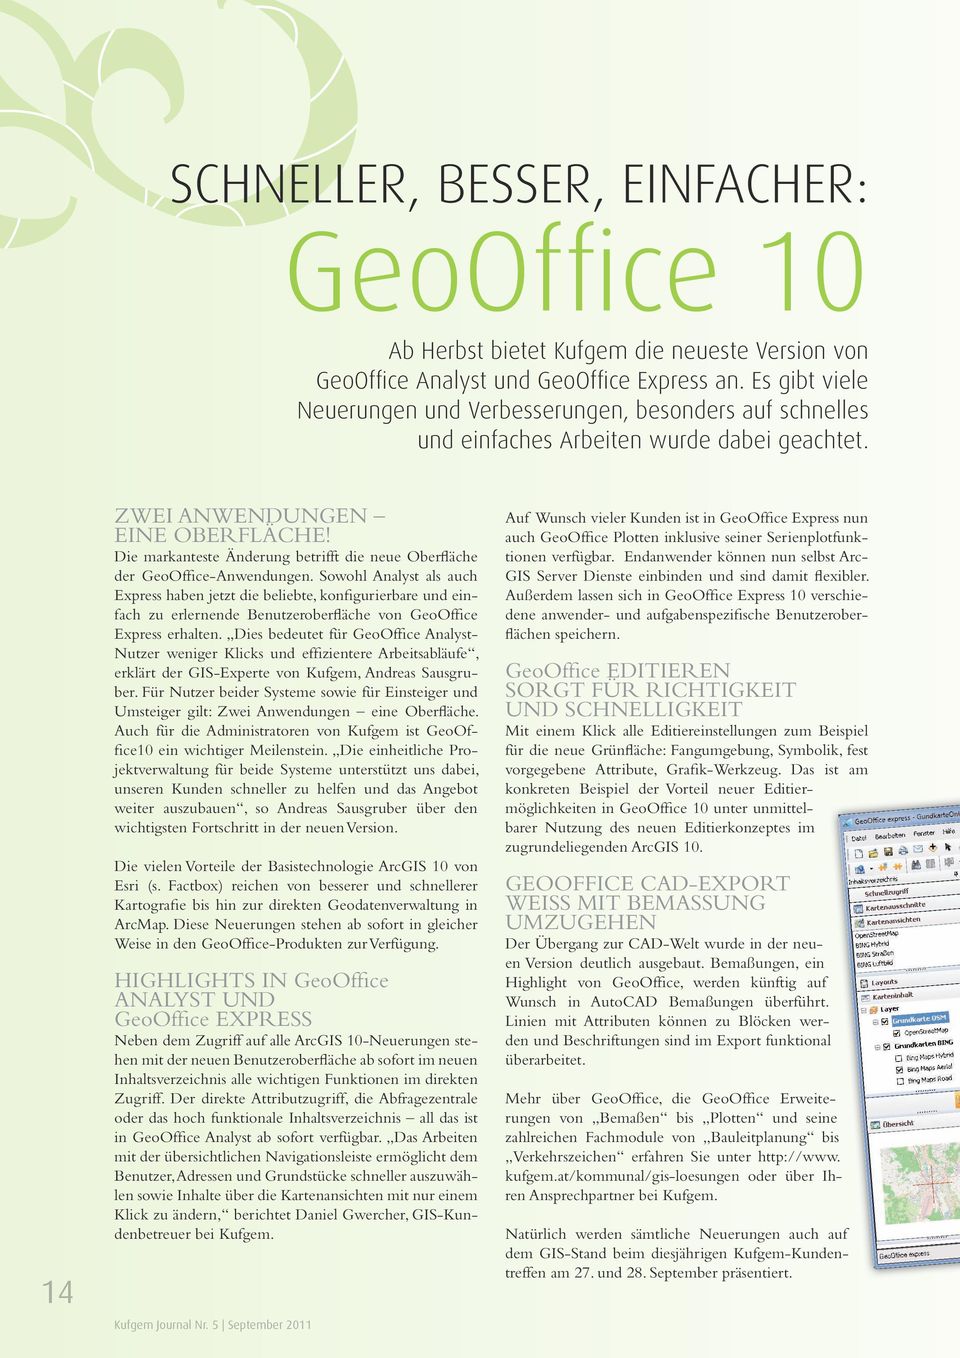 Die markanteste Änderung betrifft die neue Oberfläche der GeoOffice-Anwendungen.